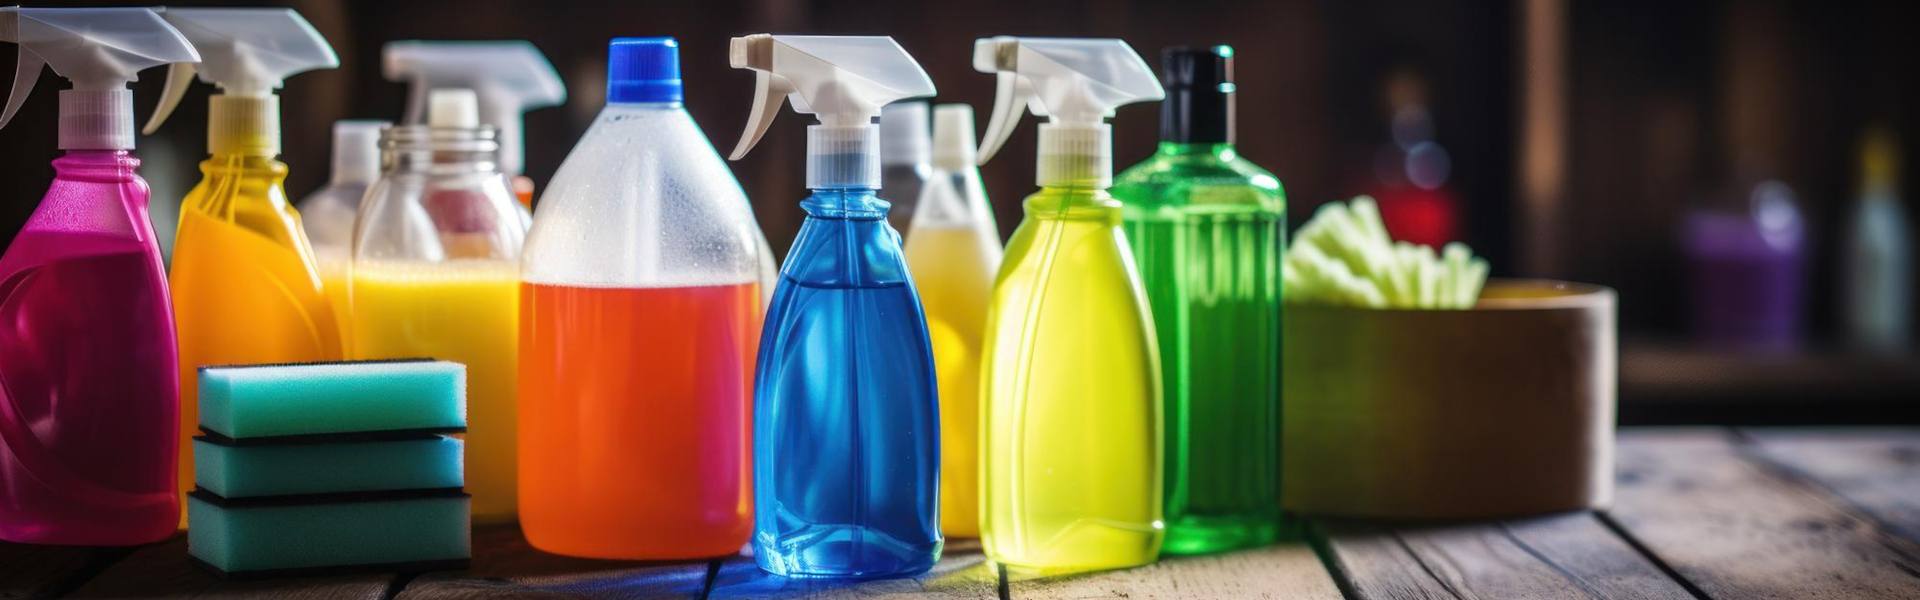 Fabricación de Productos Químicos para la Limpieza